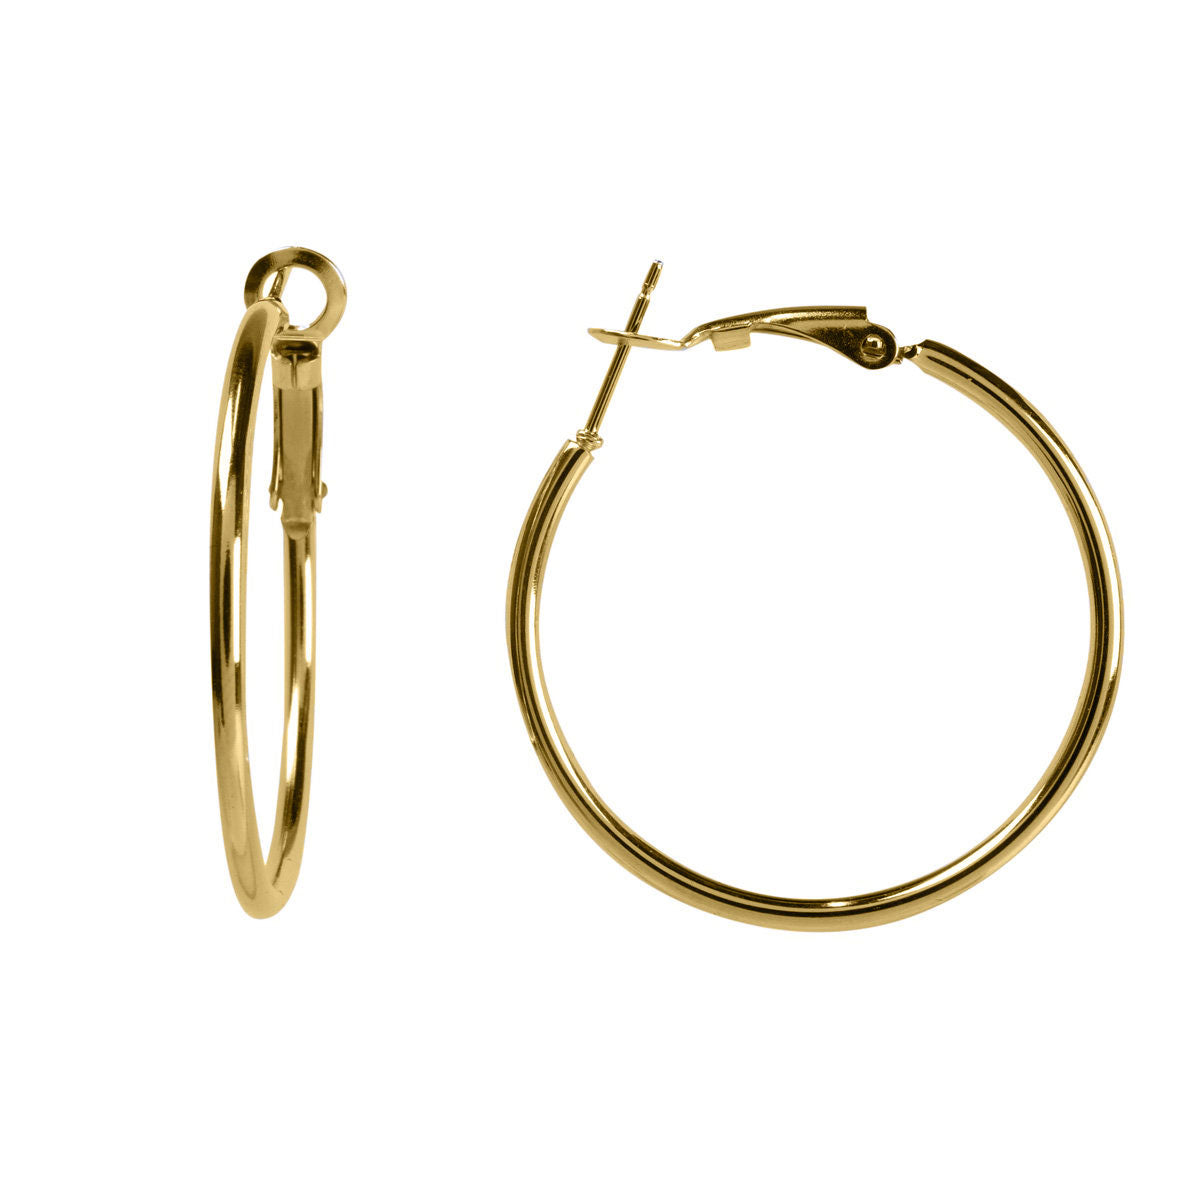 Steel earrings 3,5cm 2mm